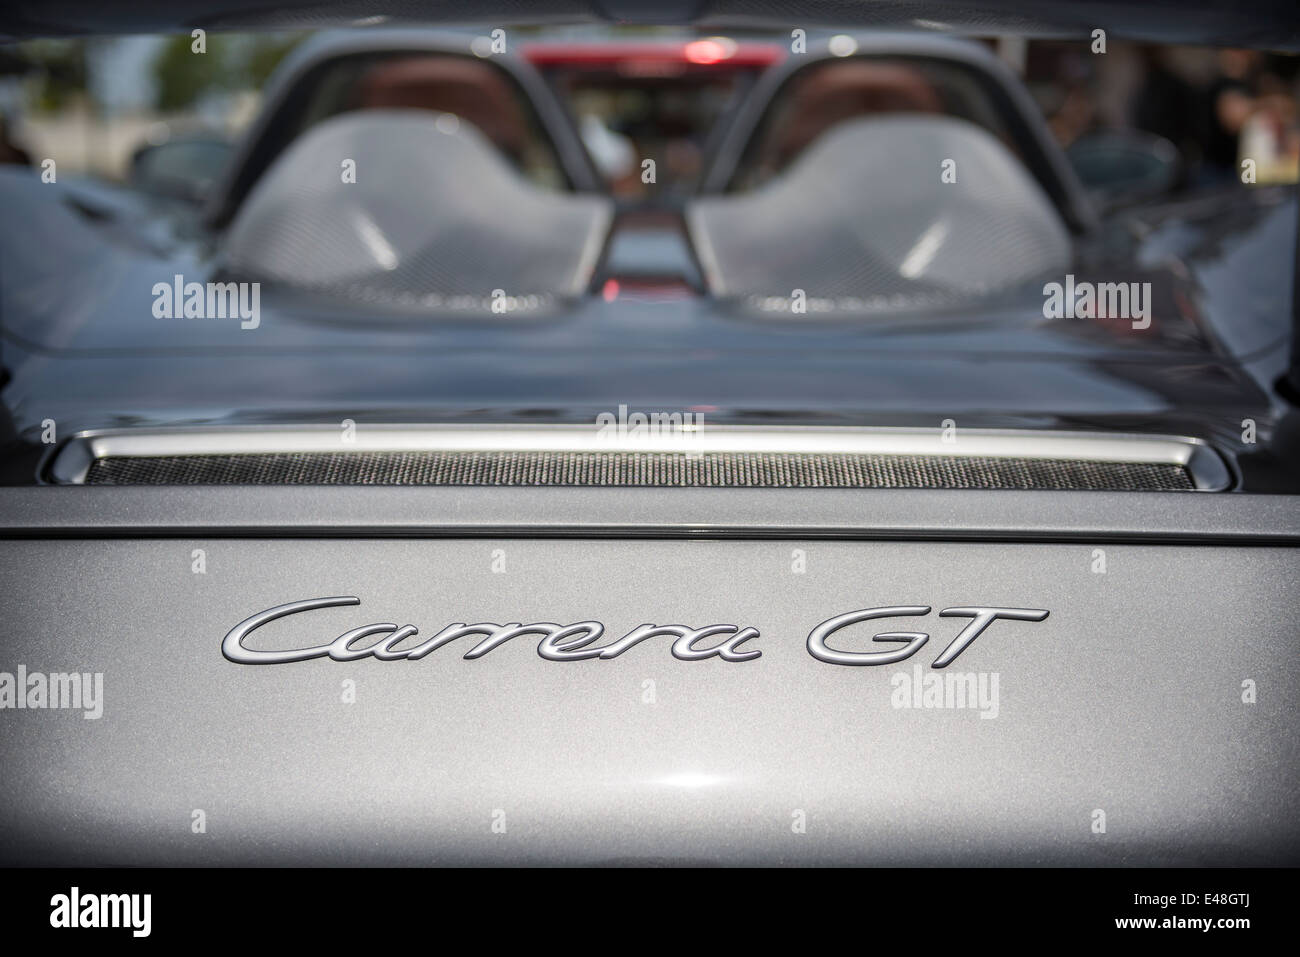 La exótica y bella Porsche Carrera GT supercar. Foto de stock